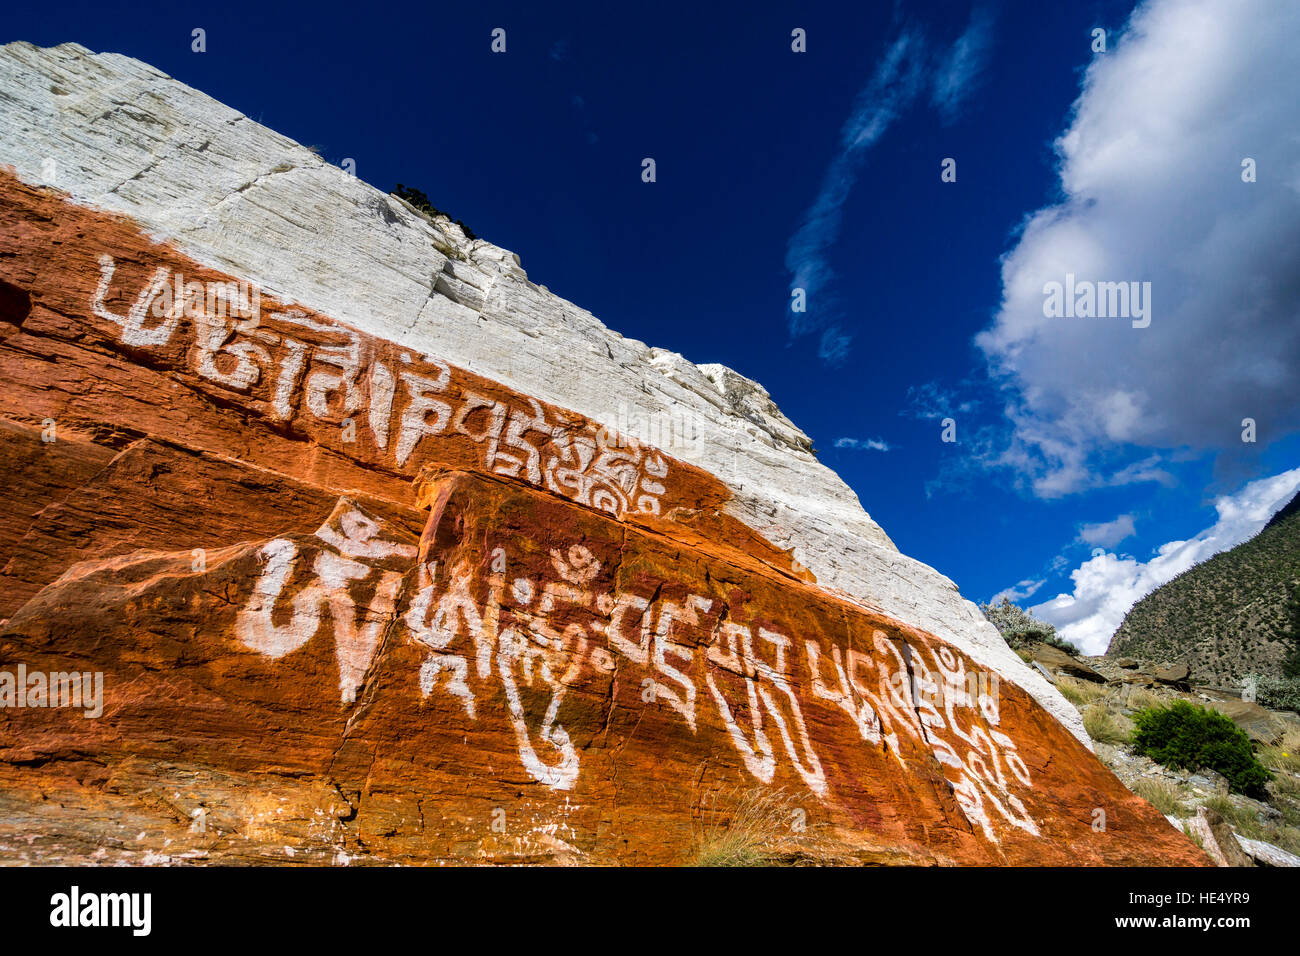 Un rocher au-dessus du village est peint en rouge et blanc avec quelques écritures tibétain pour des raisons religieuses Banque D'Images